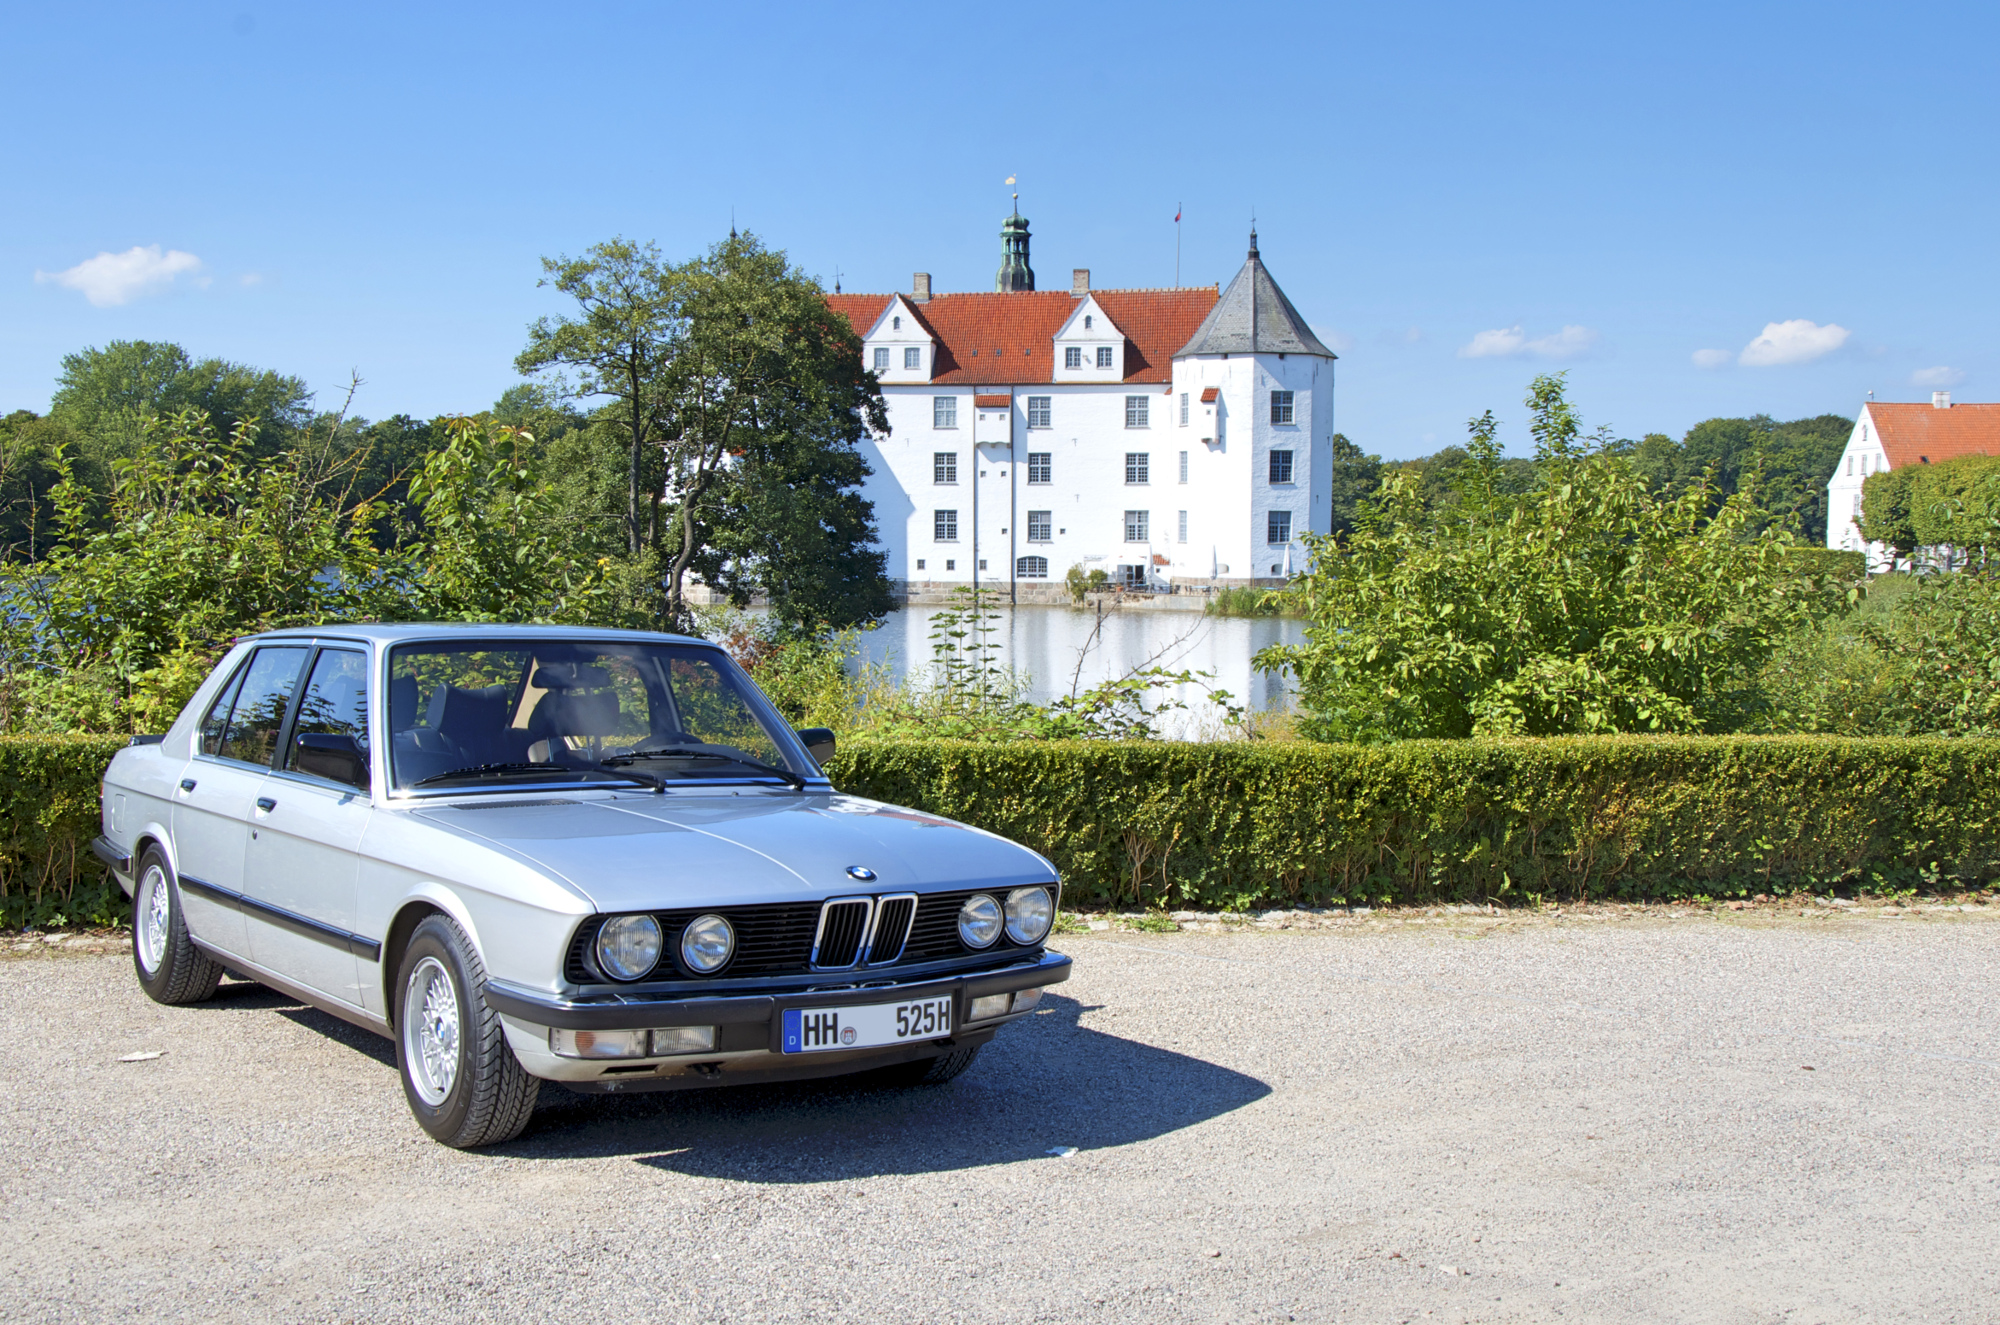 BMW 525i vor dem Glücksburger Schloss